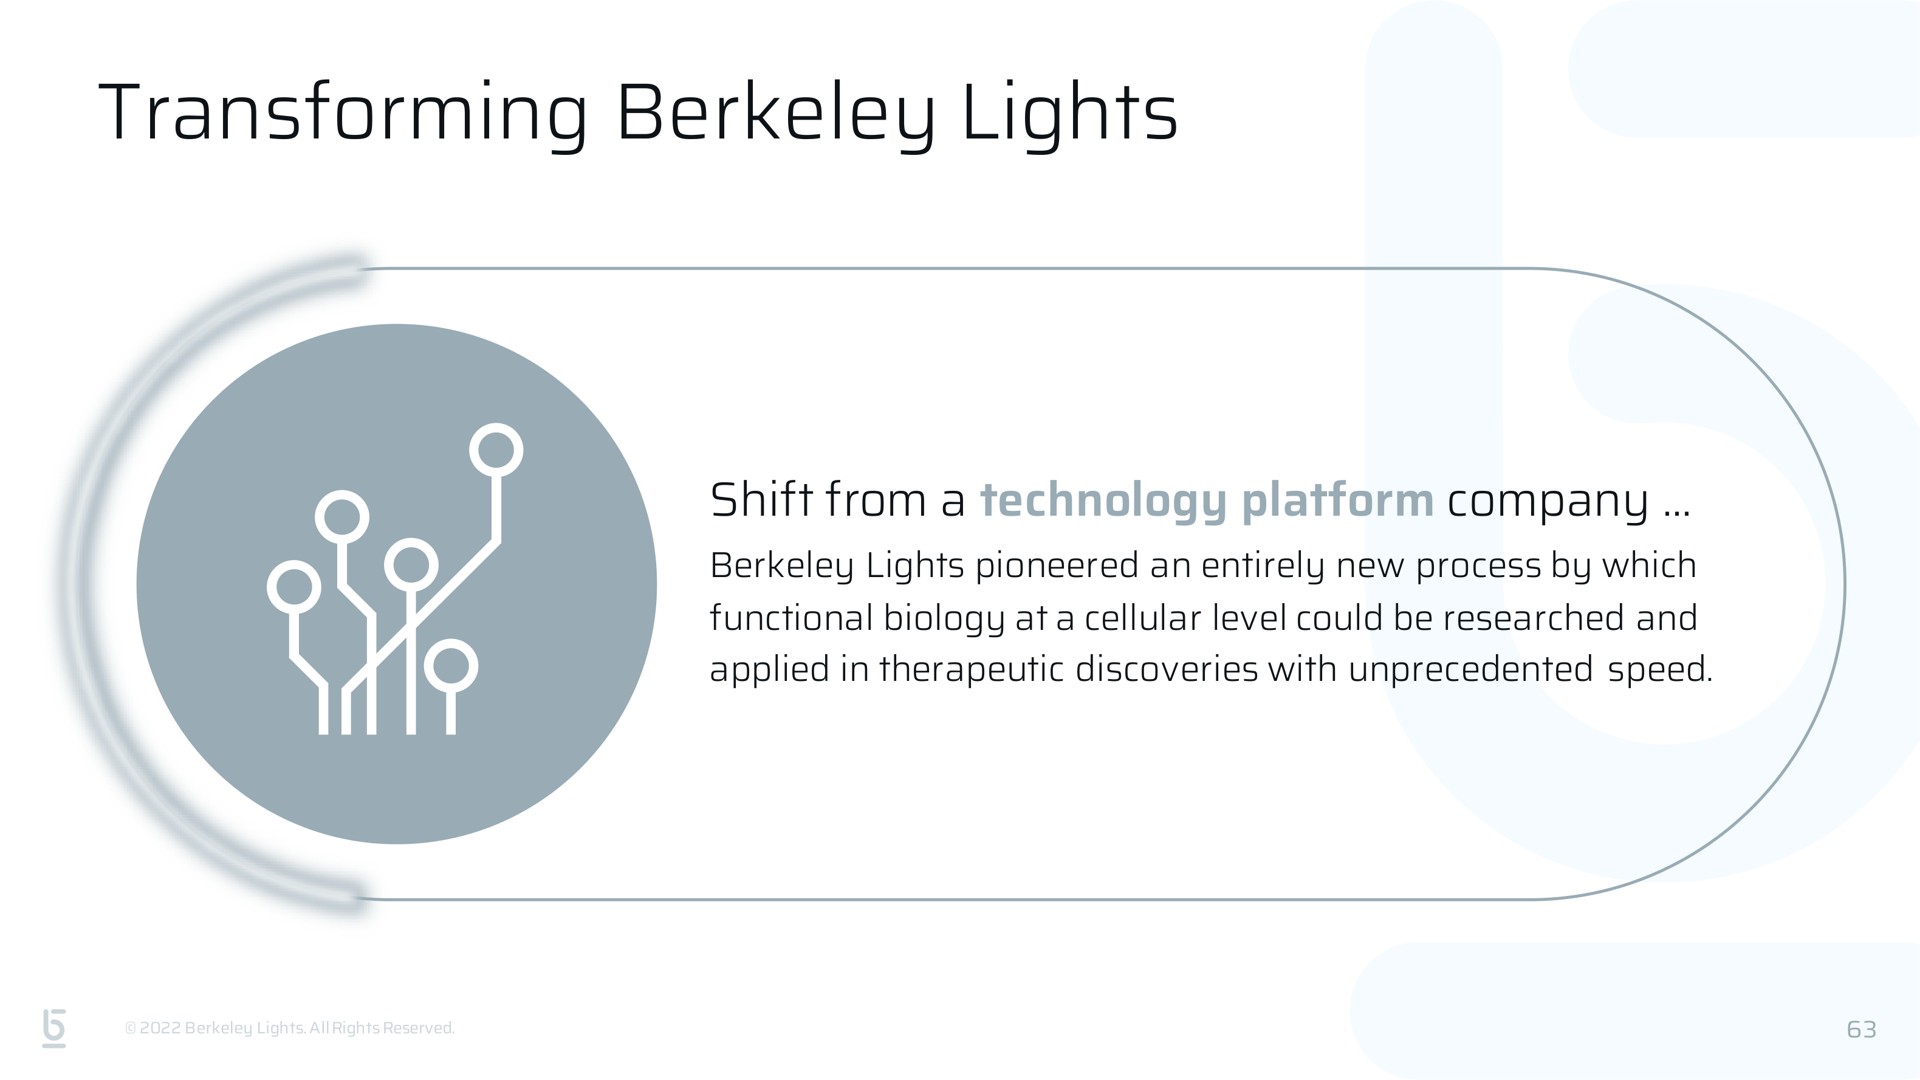 transforming lights | Berkeley Lights